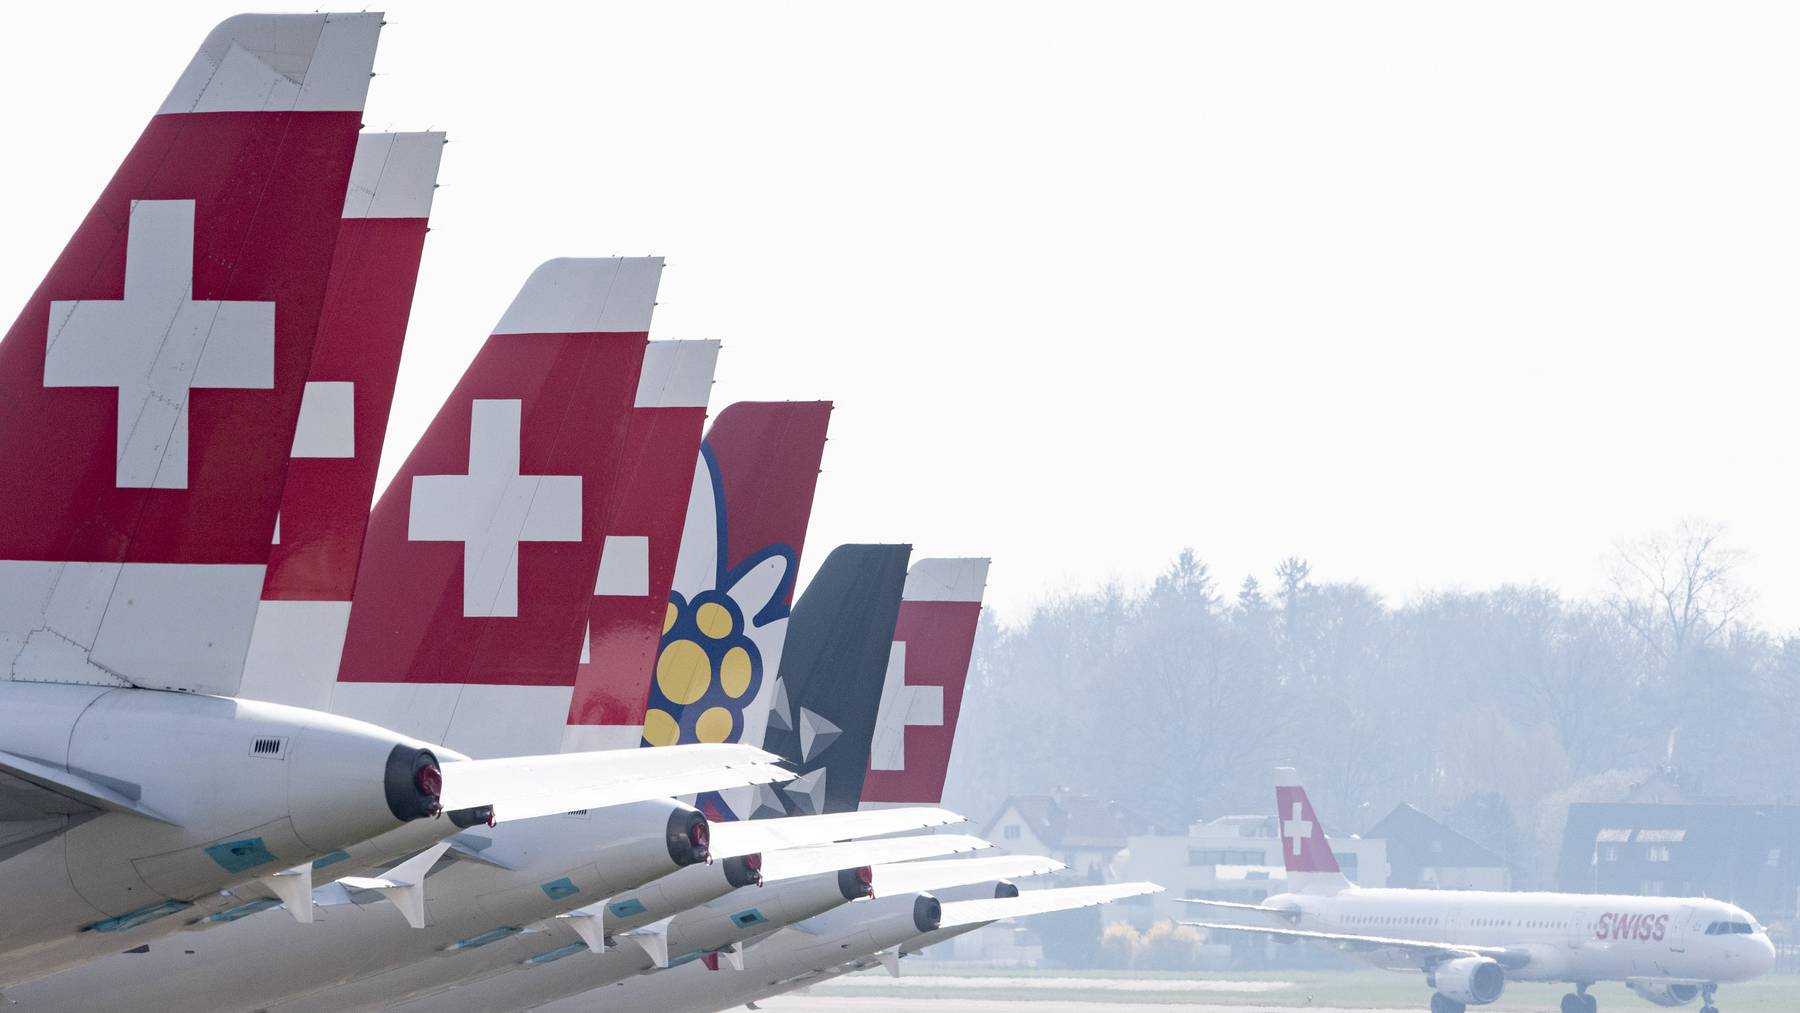 Derzeit bleibt die Flotte der Swiss weitgehend am Boden.